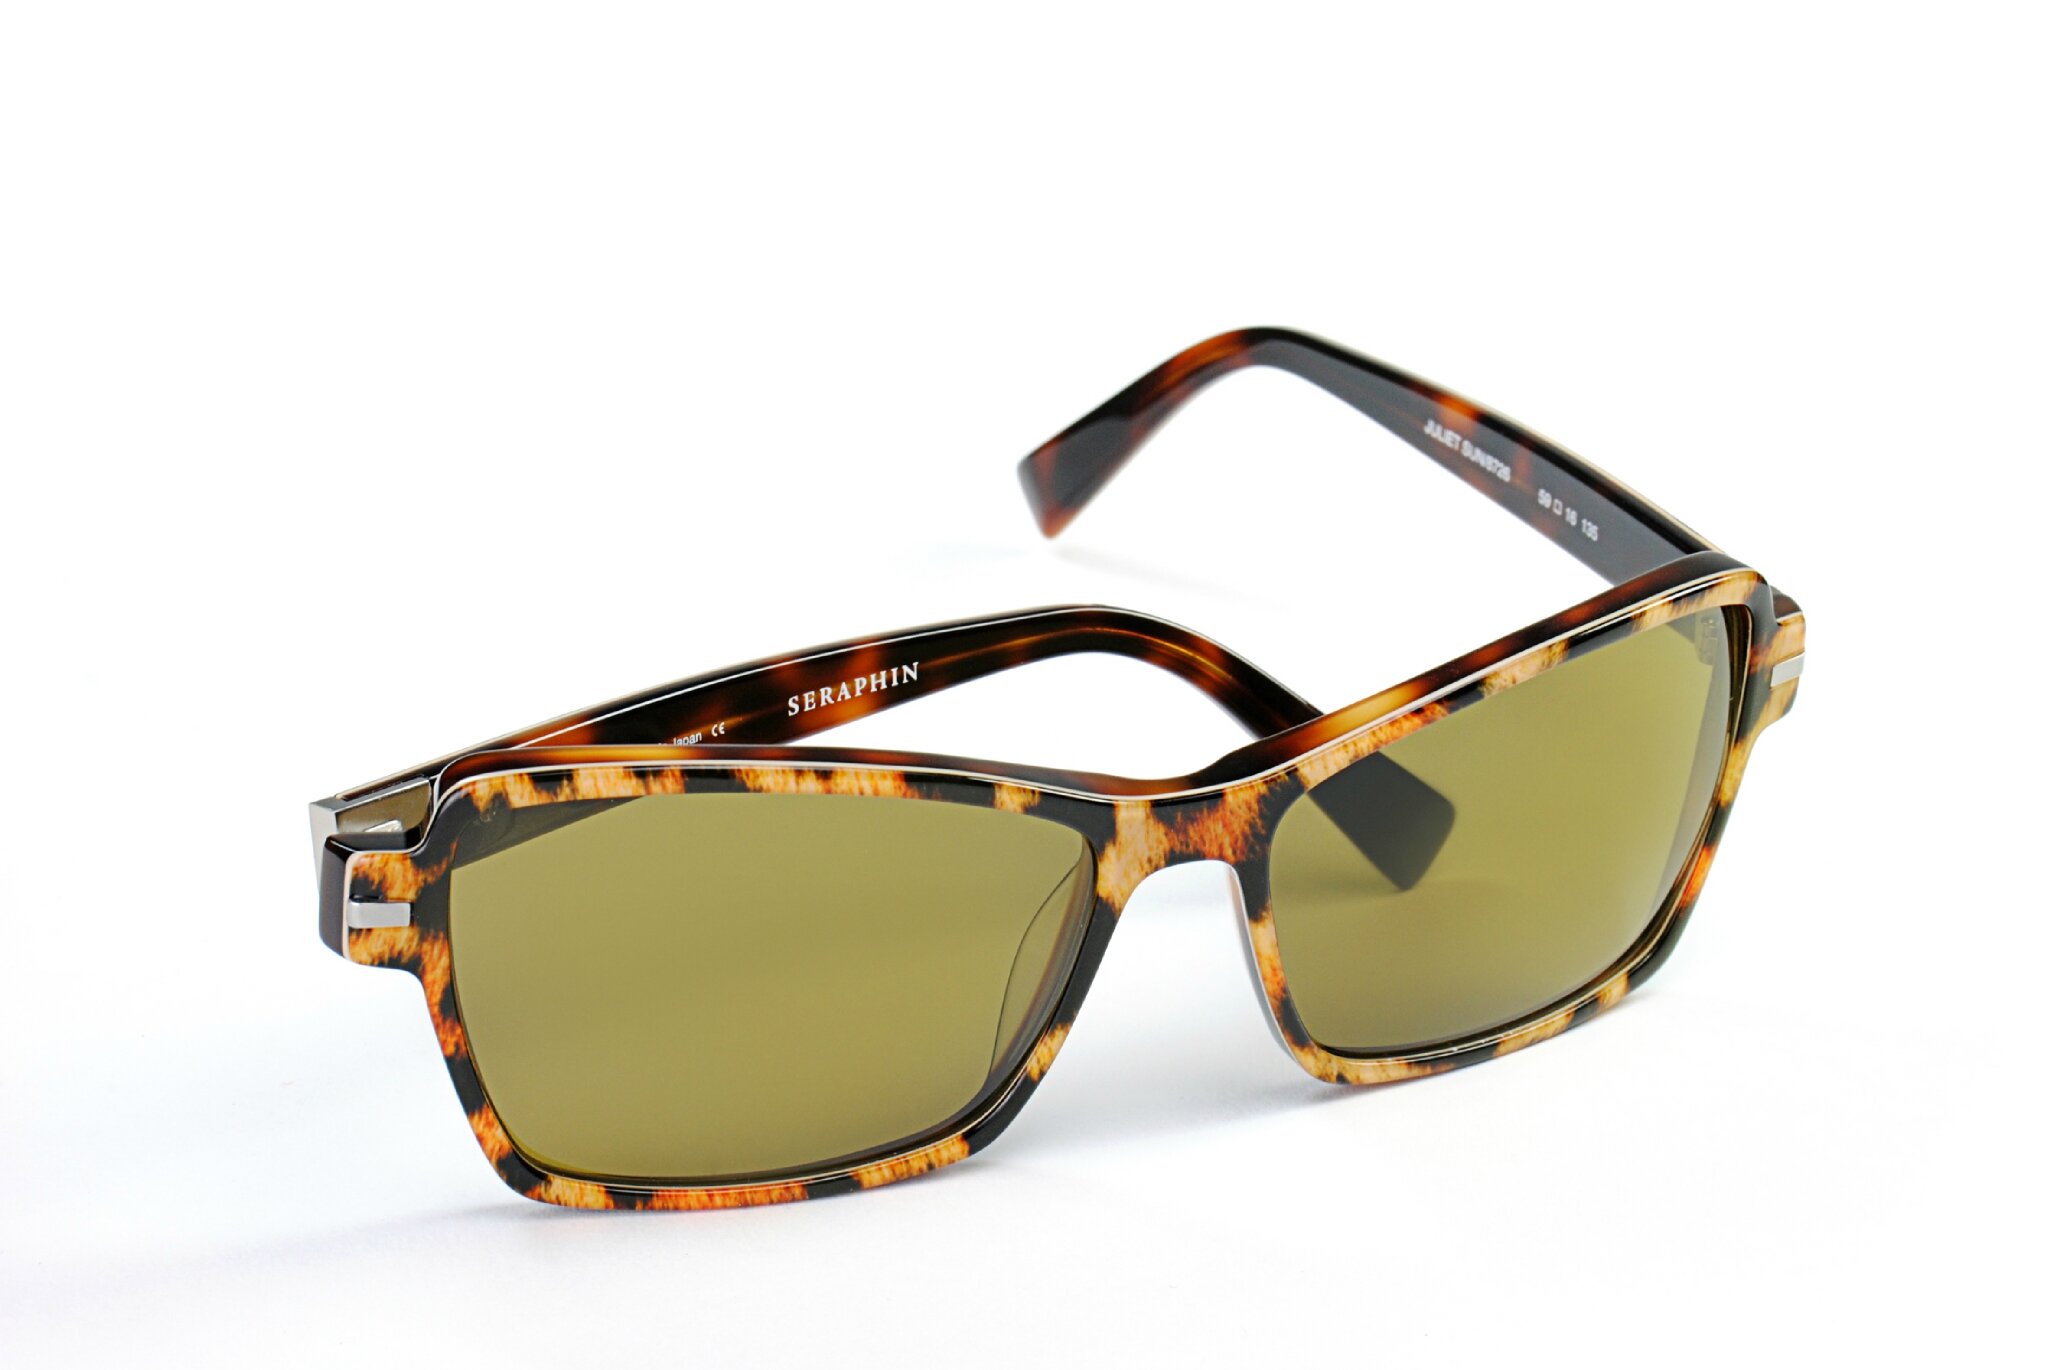 Seraphin Sunglasses Frame Only Roosevelt Sun/8523 Black Japan 48 mm  Handmade | eBay